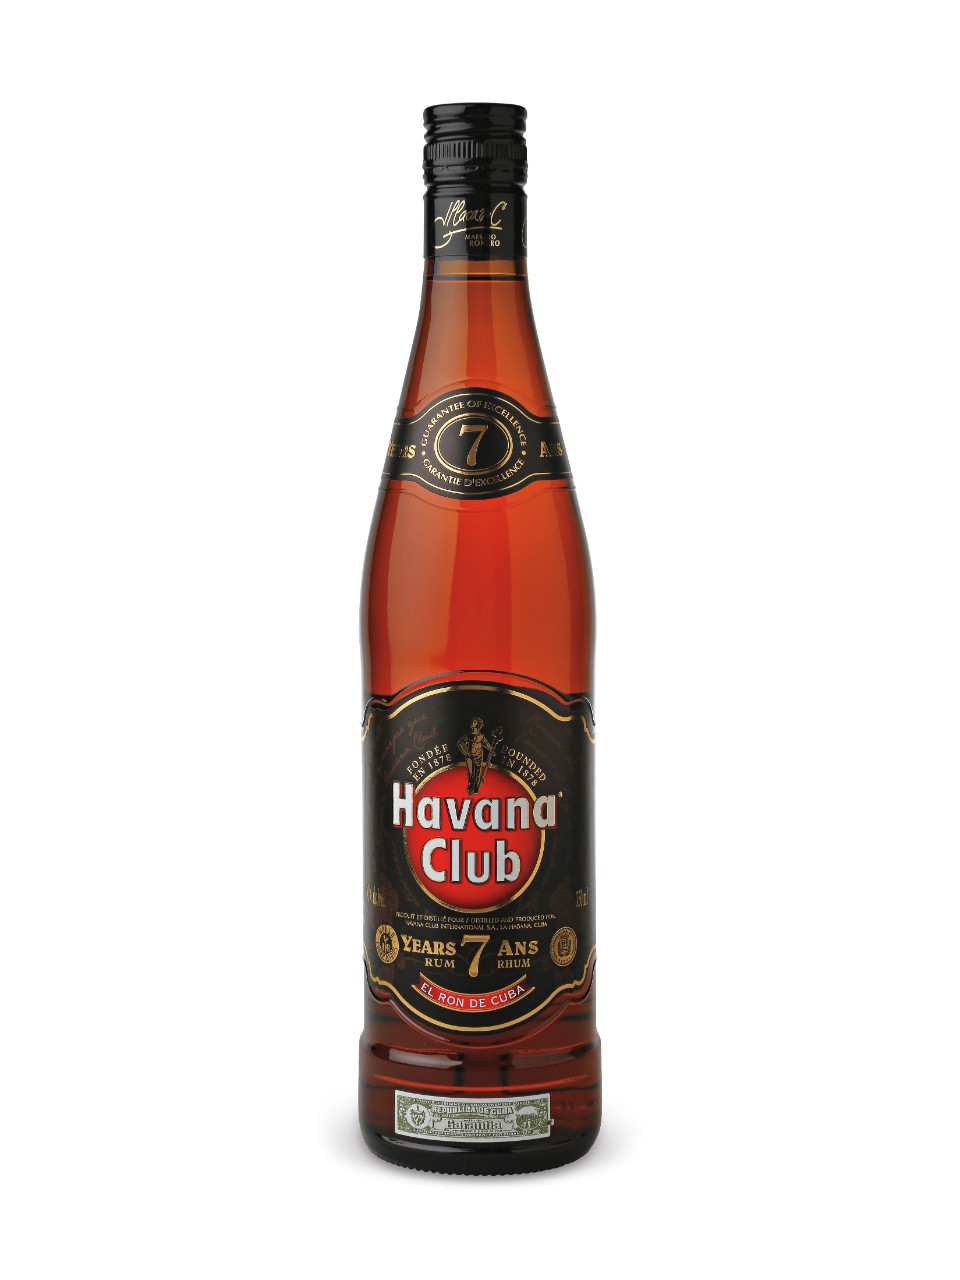 Havana Club Dry 7 Years Old Rum